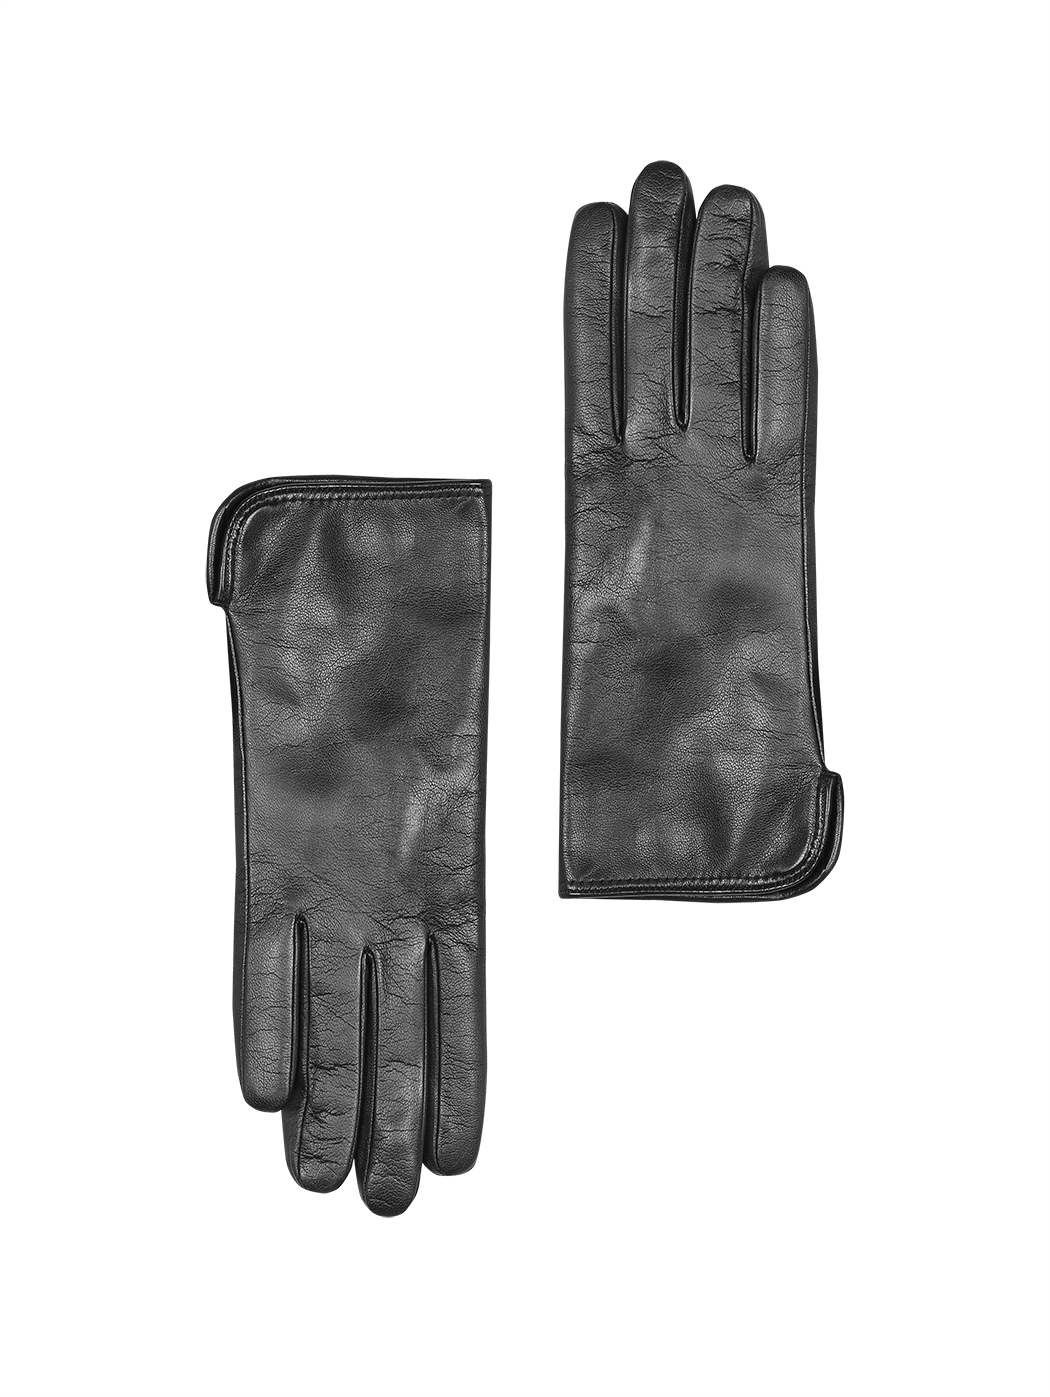 Women's Gloves Cashmere Black